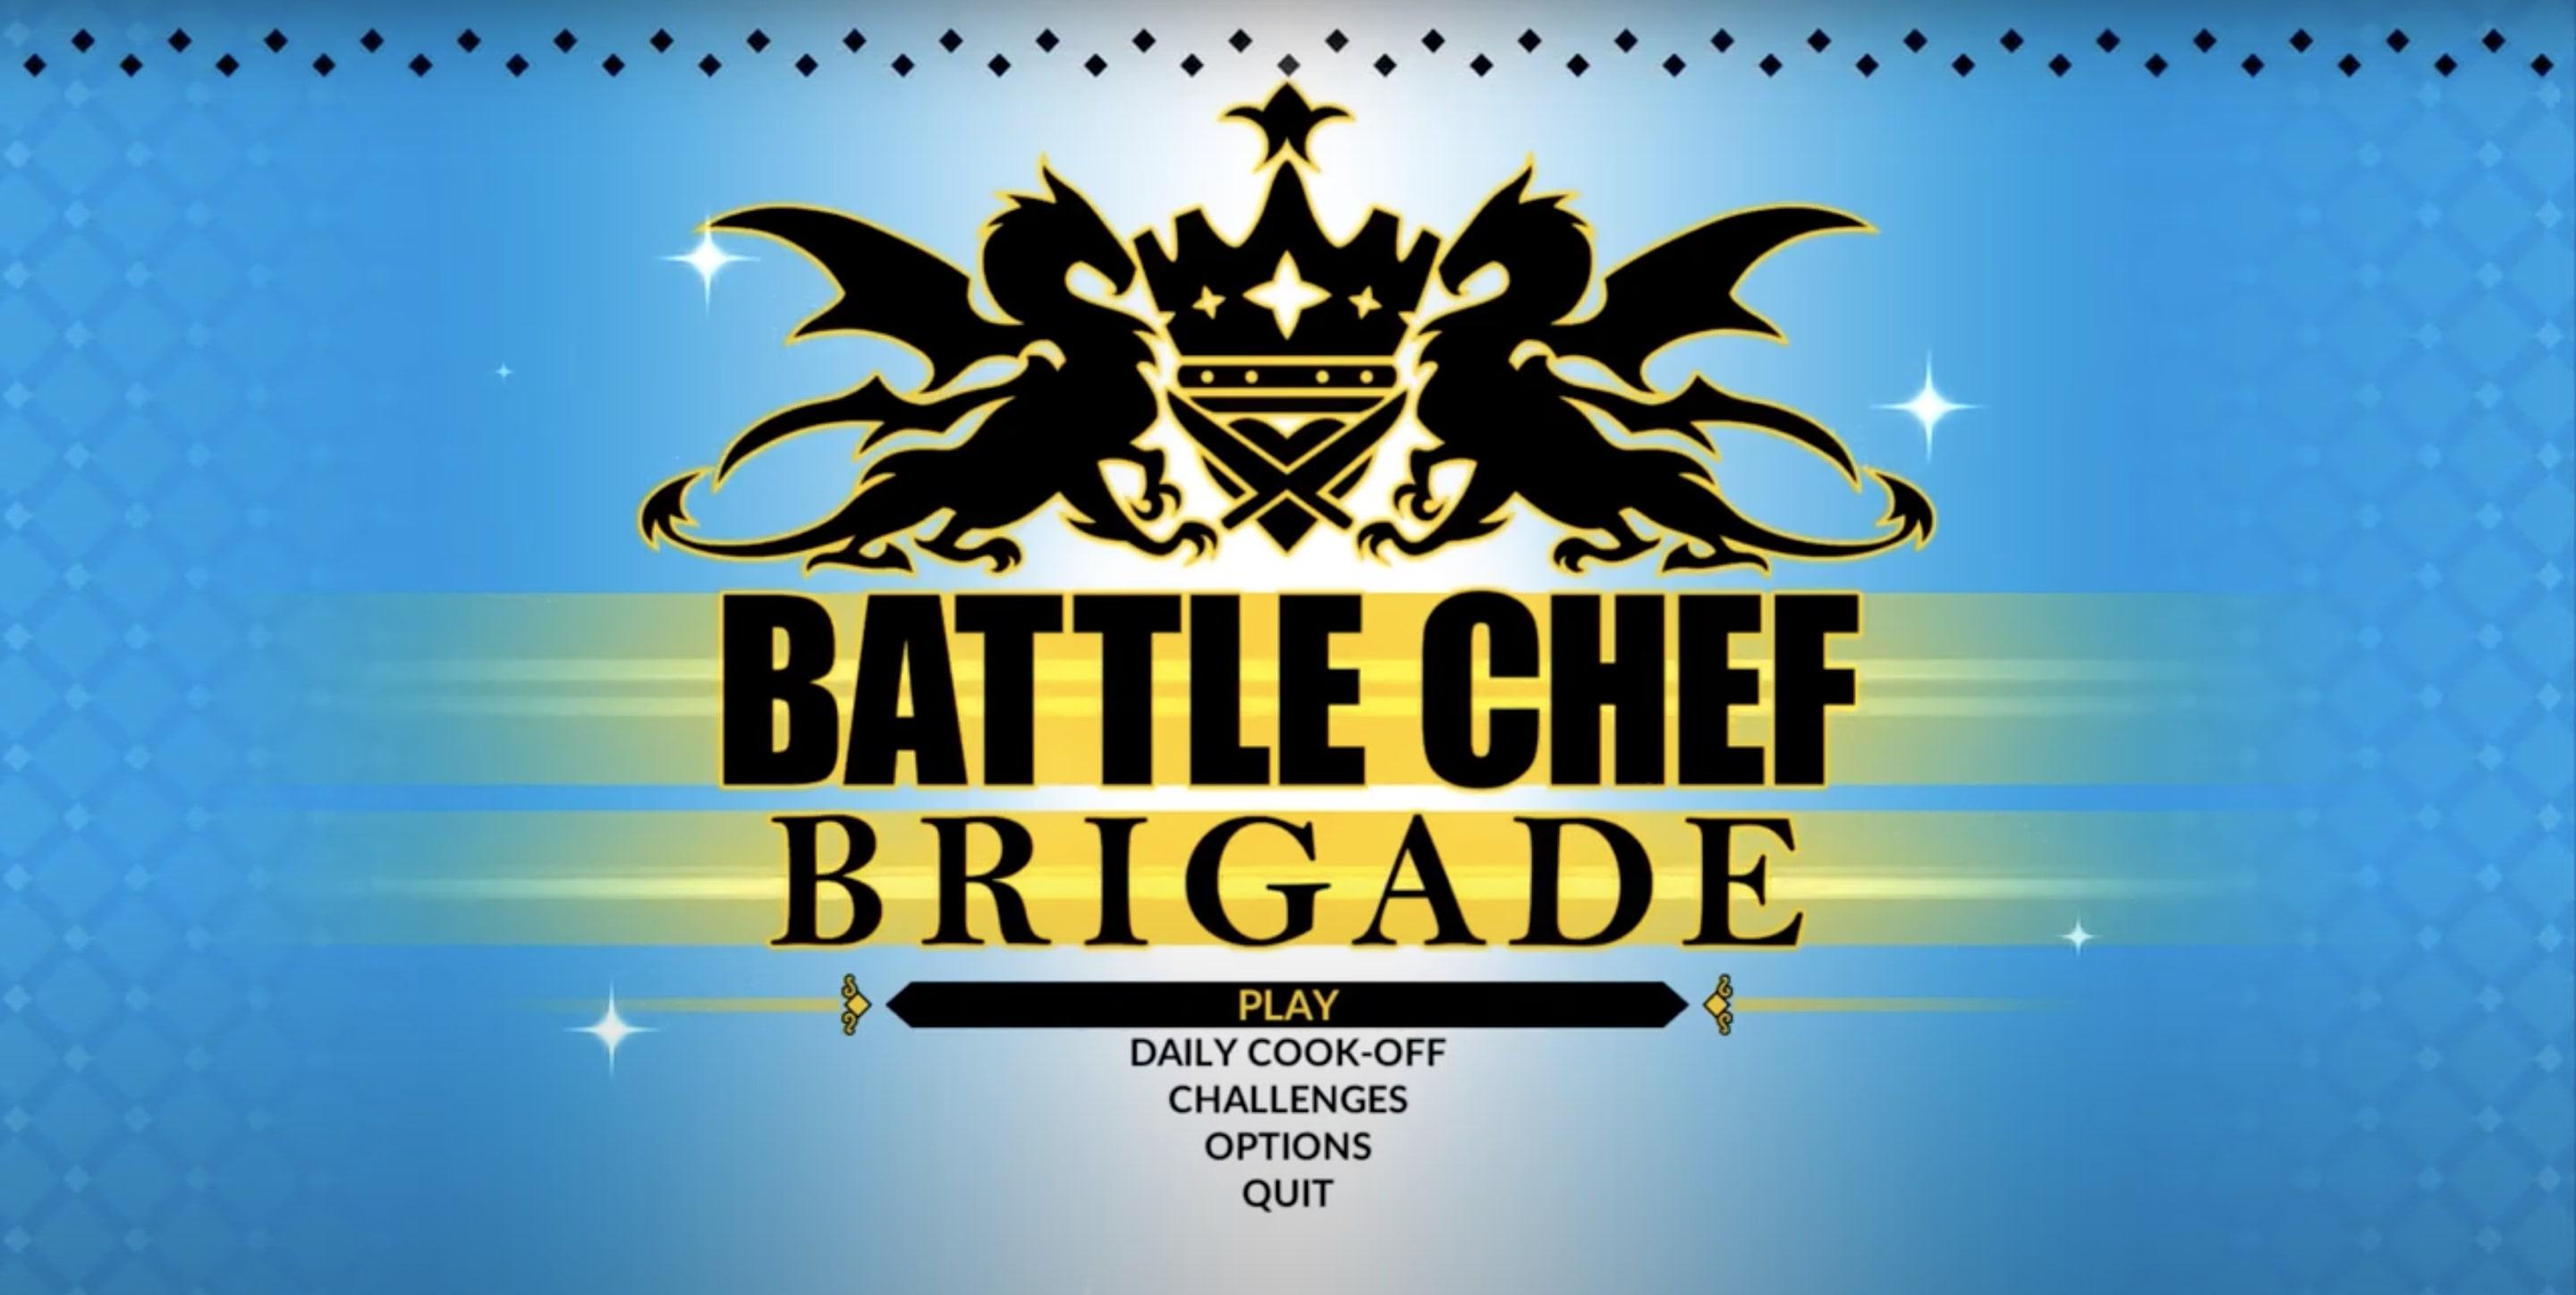 Battle Chef image title 